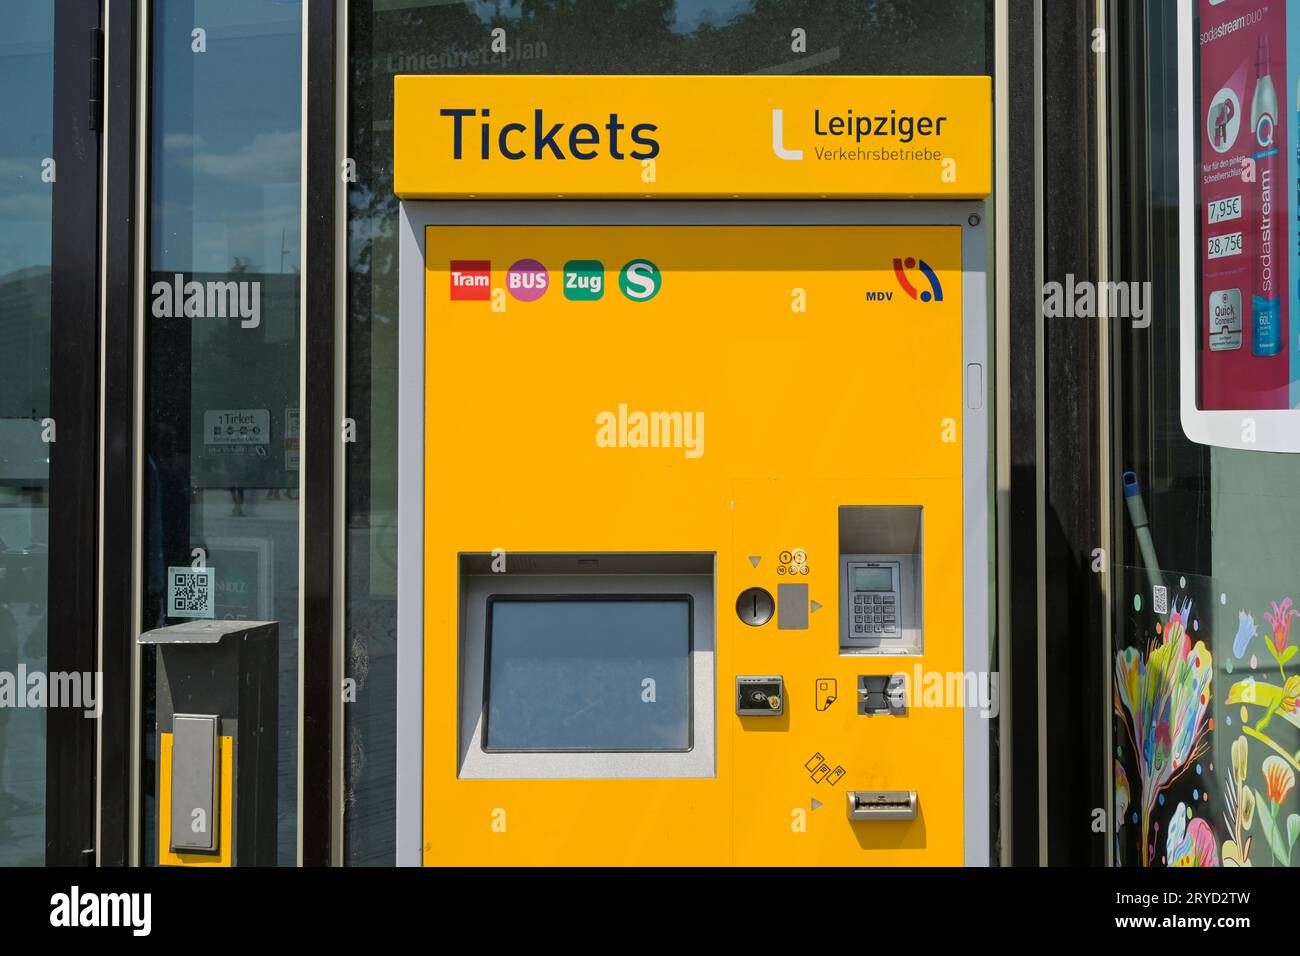 Ticket Automat, Leipziger Verkehrsbetriebe, Leipzig, Sachsen, Deutschland *** Ticket machine, Leipziger Verkehrsbetriebe, Leipzig, Saxony, Germany Credit: Imago/Alamy Live News Stock Photo